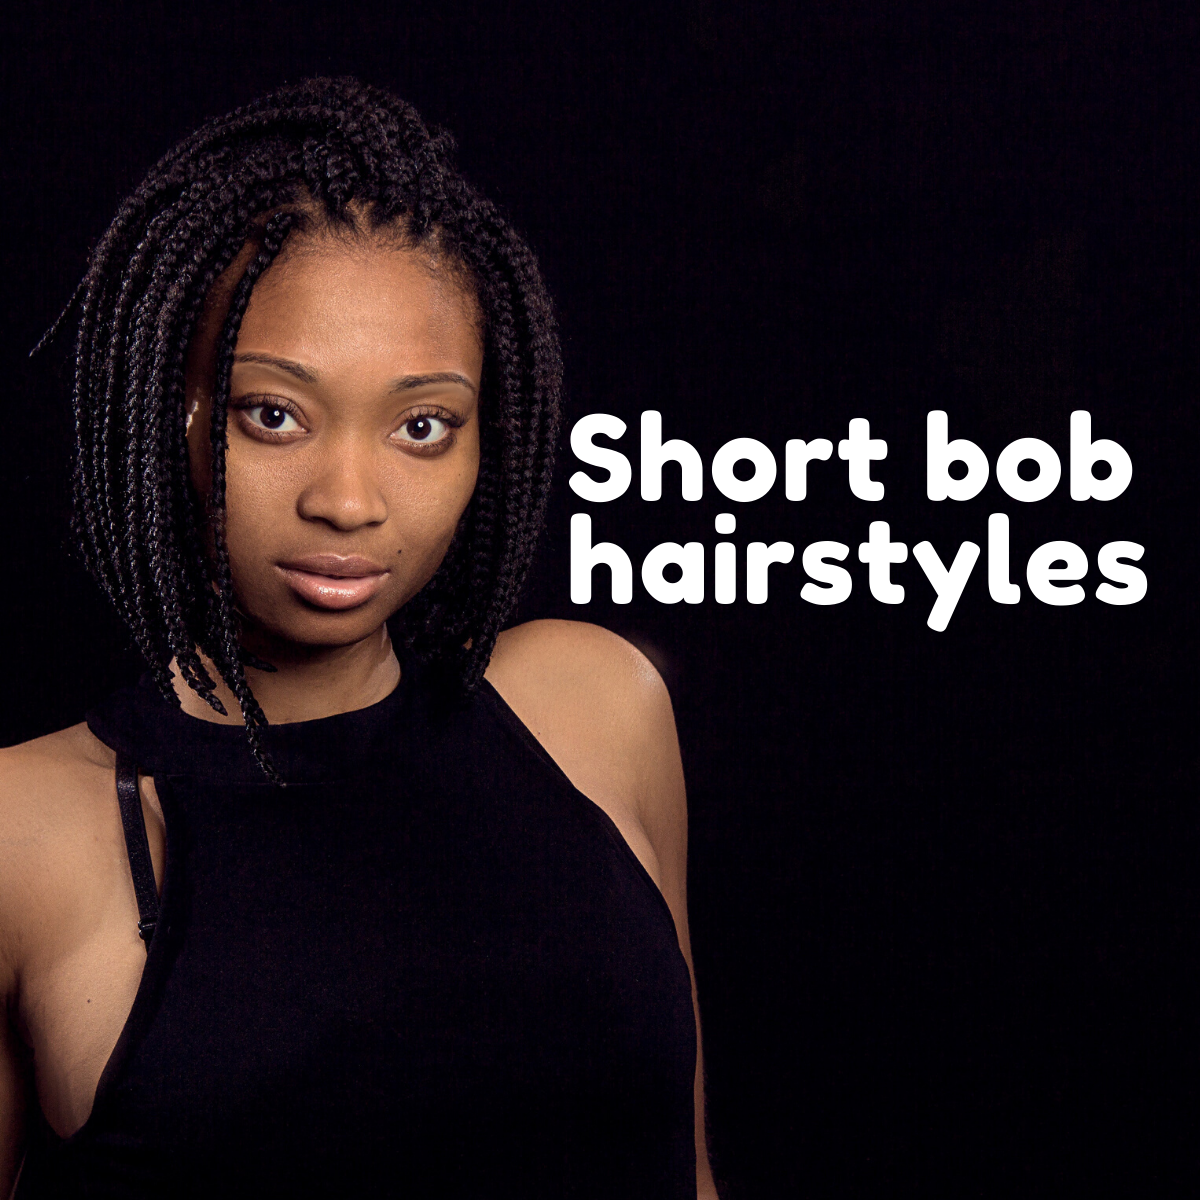 27 Short Bob Hairstyles For Black Women Trending In 2020